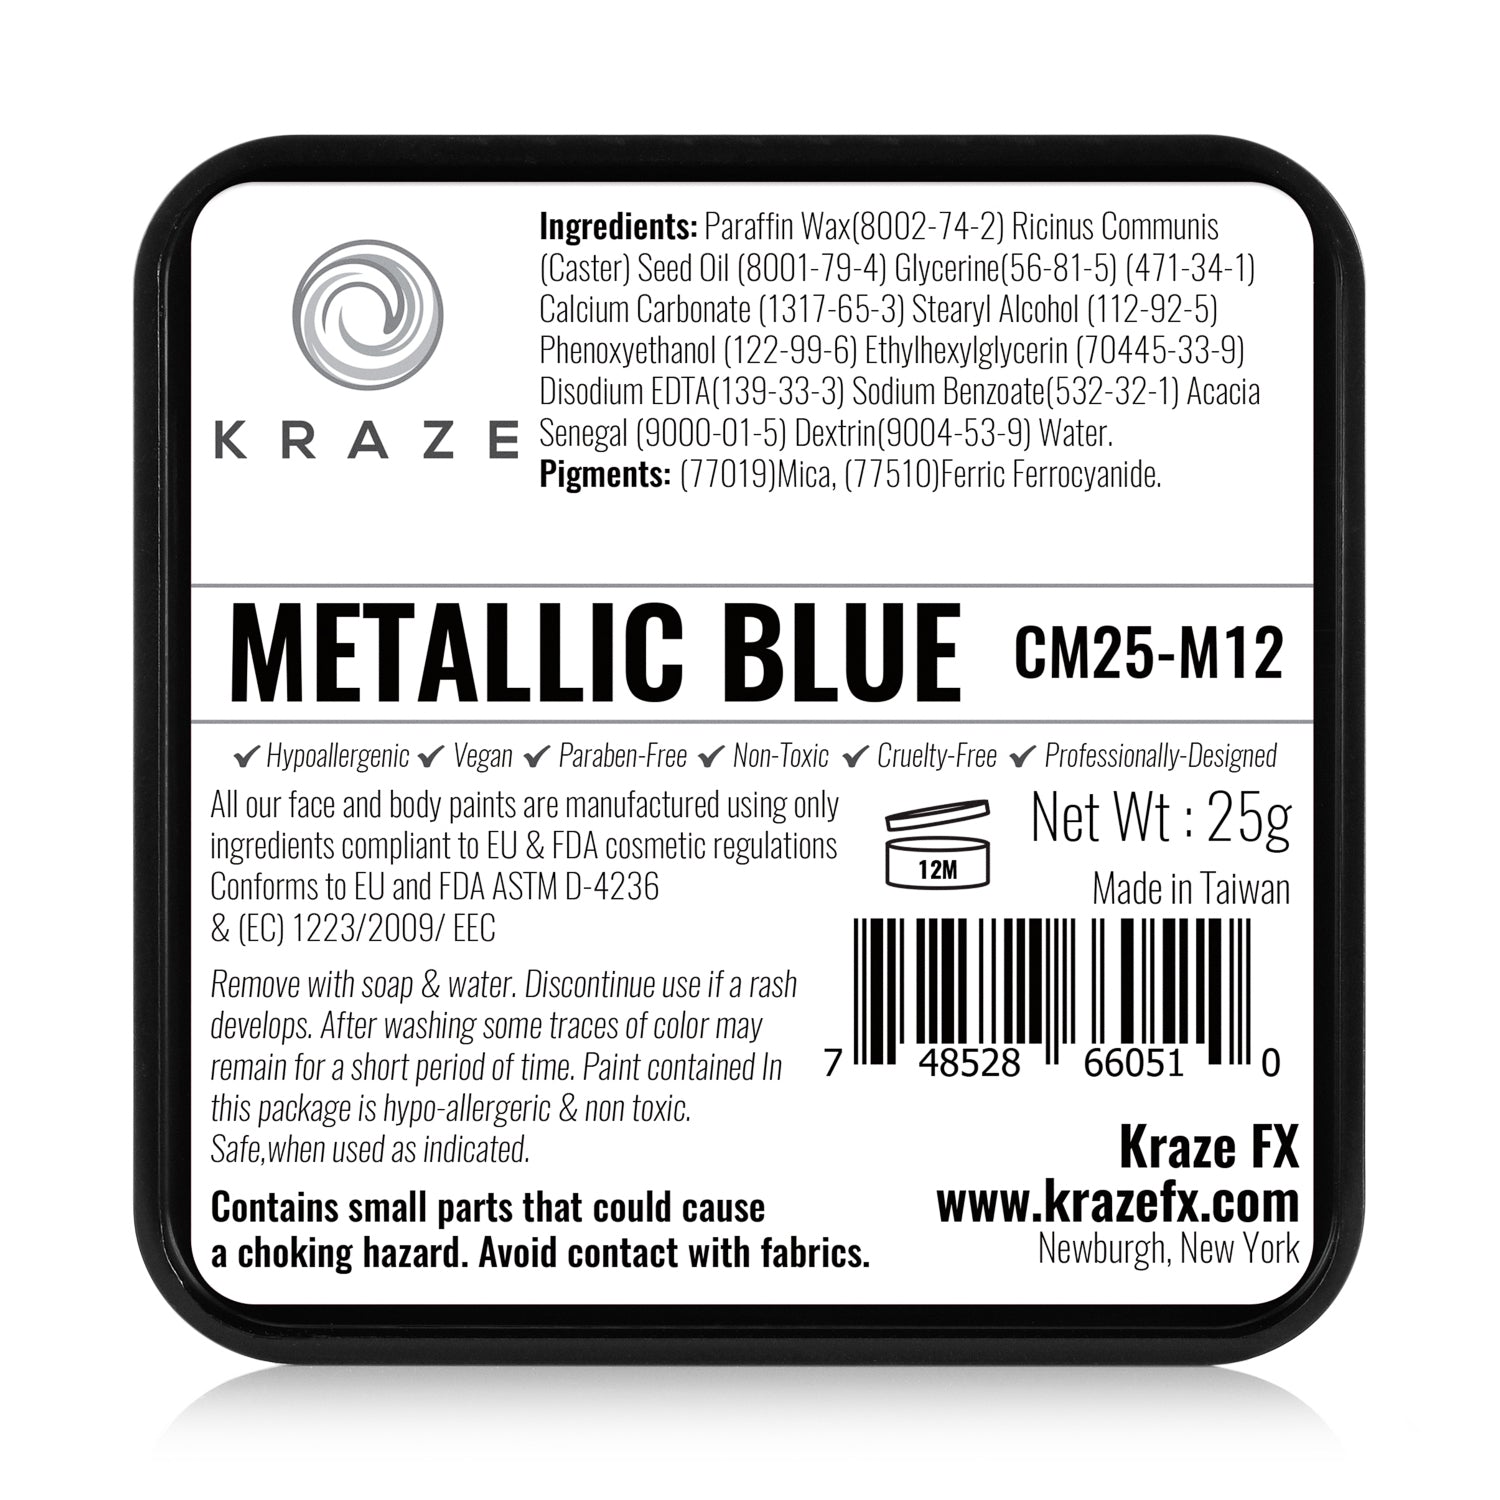 Kraze FX Face & Body Paint - Metallic Blue (25 gm)